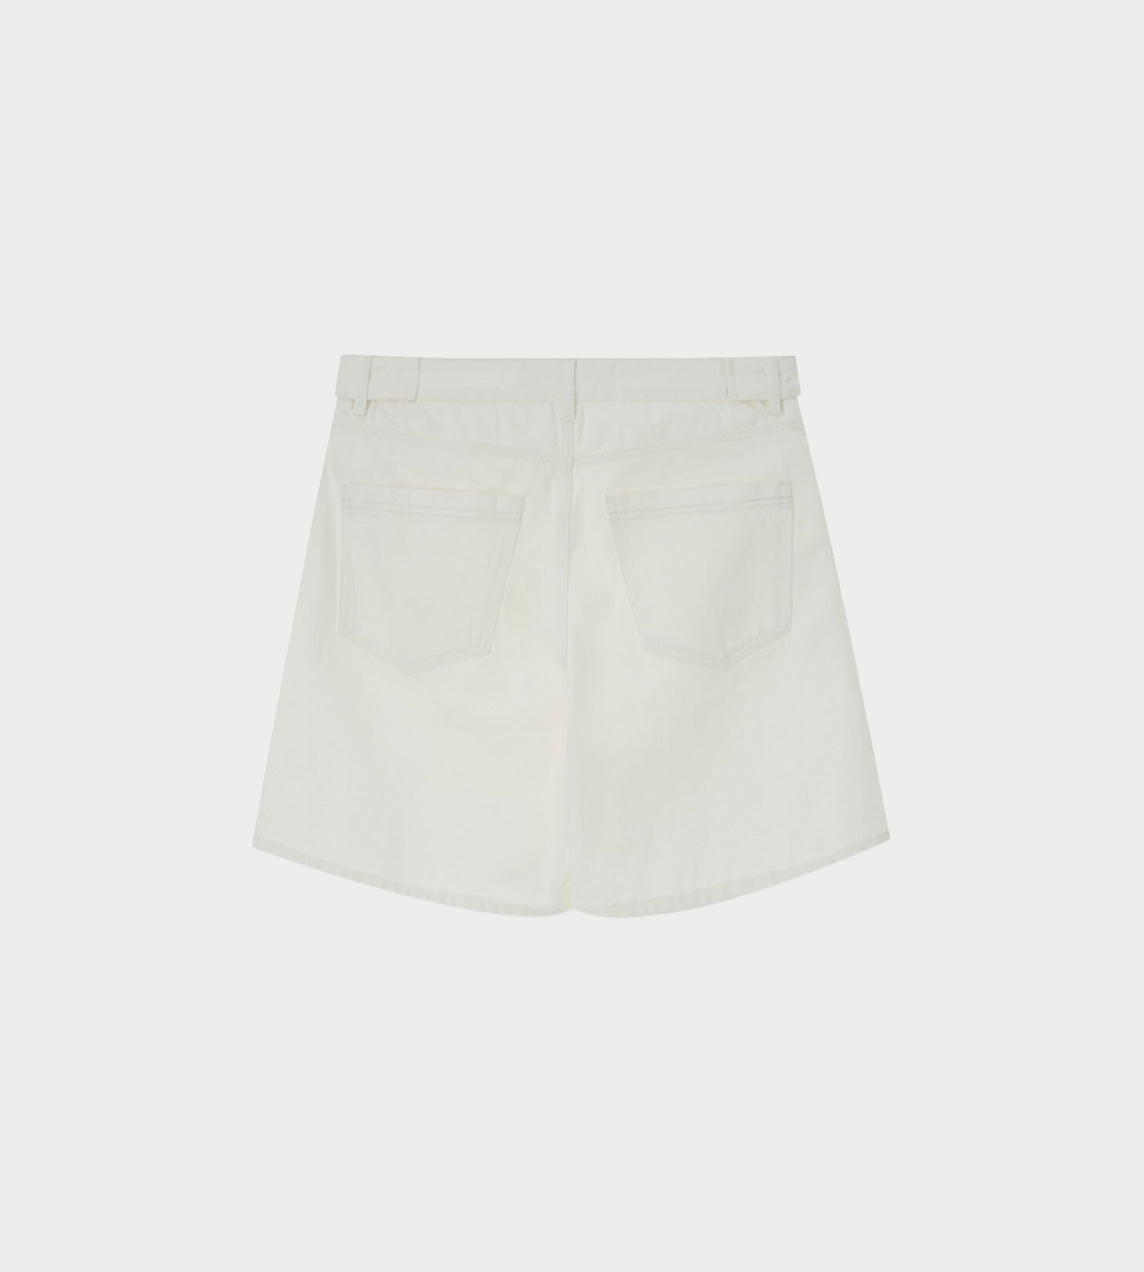 KIMHEKIM - Two Pockets Shorts White